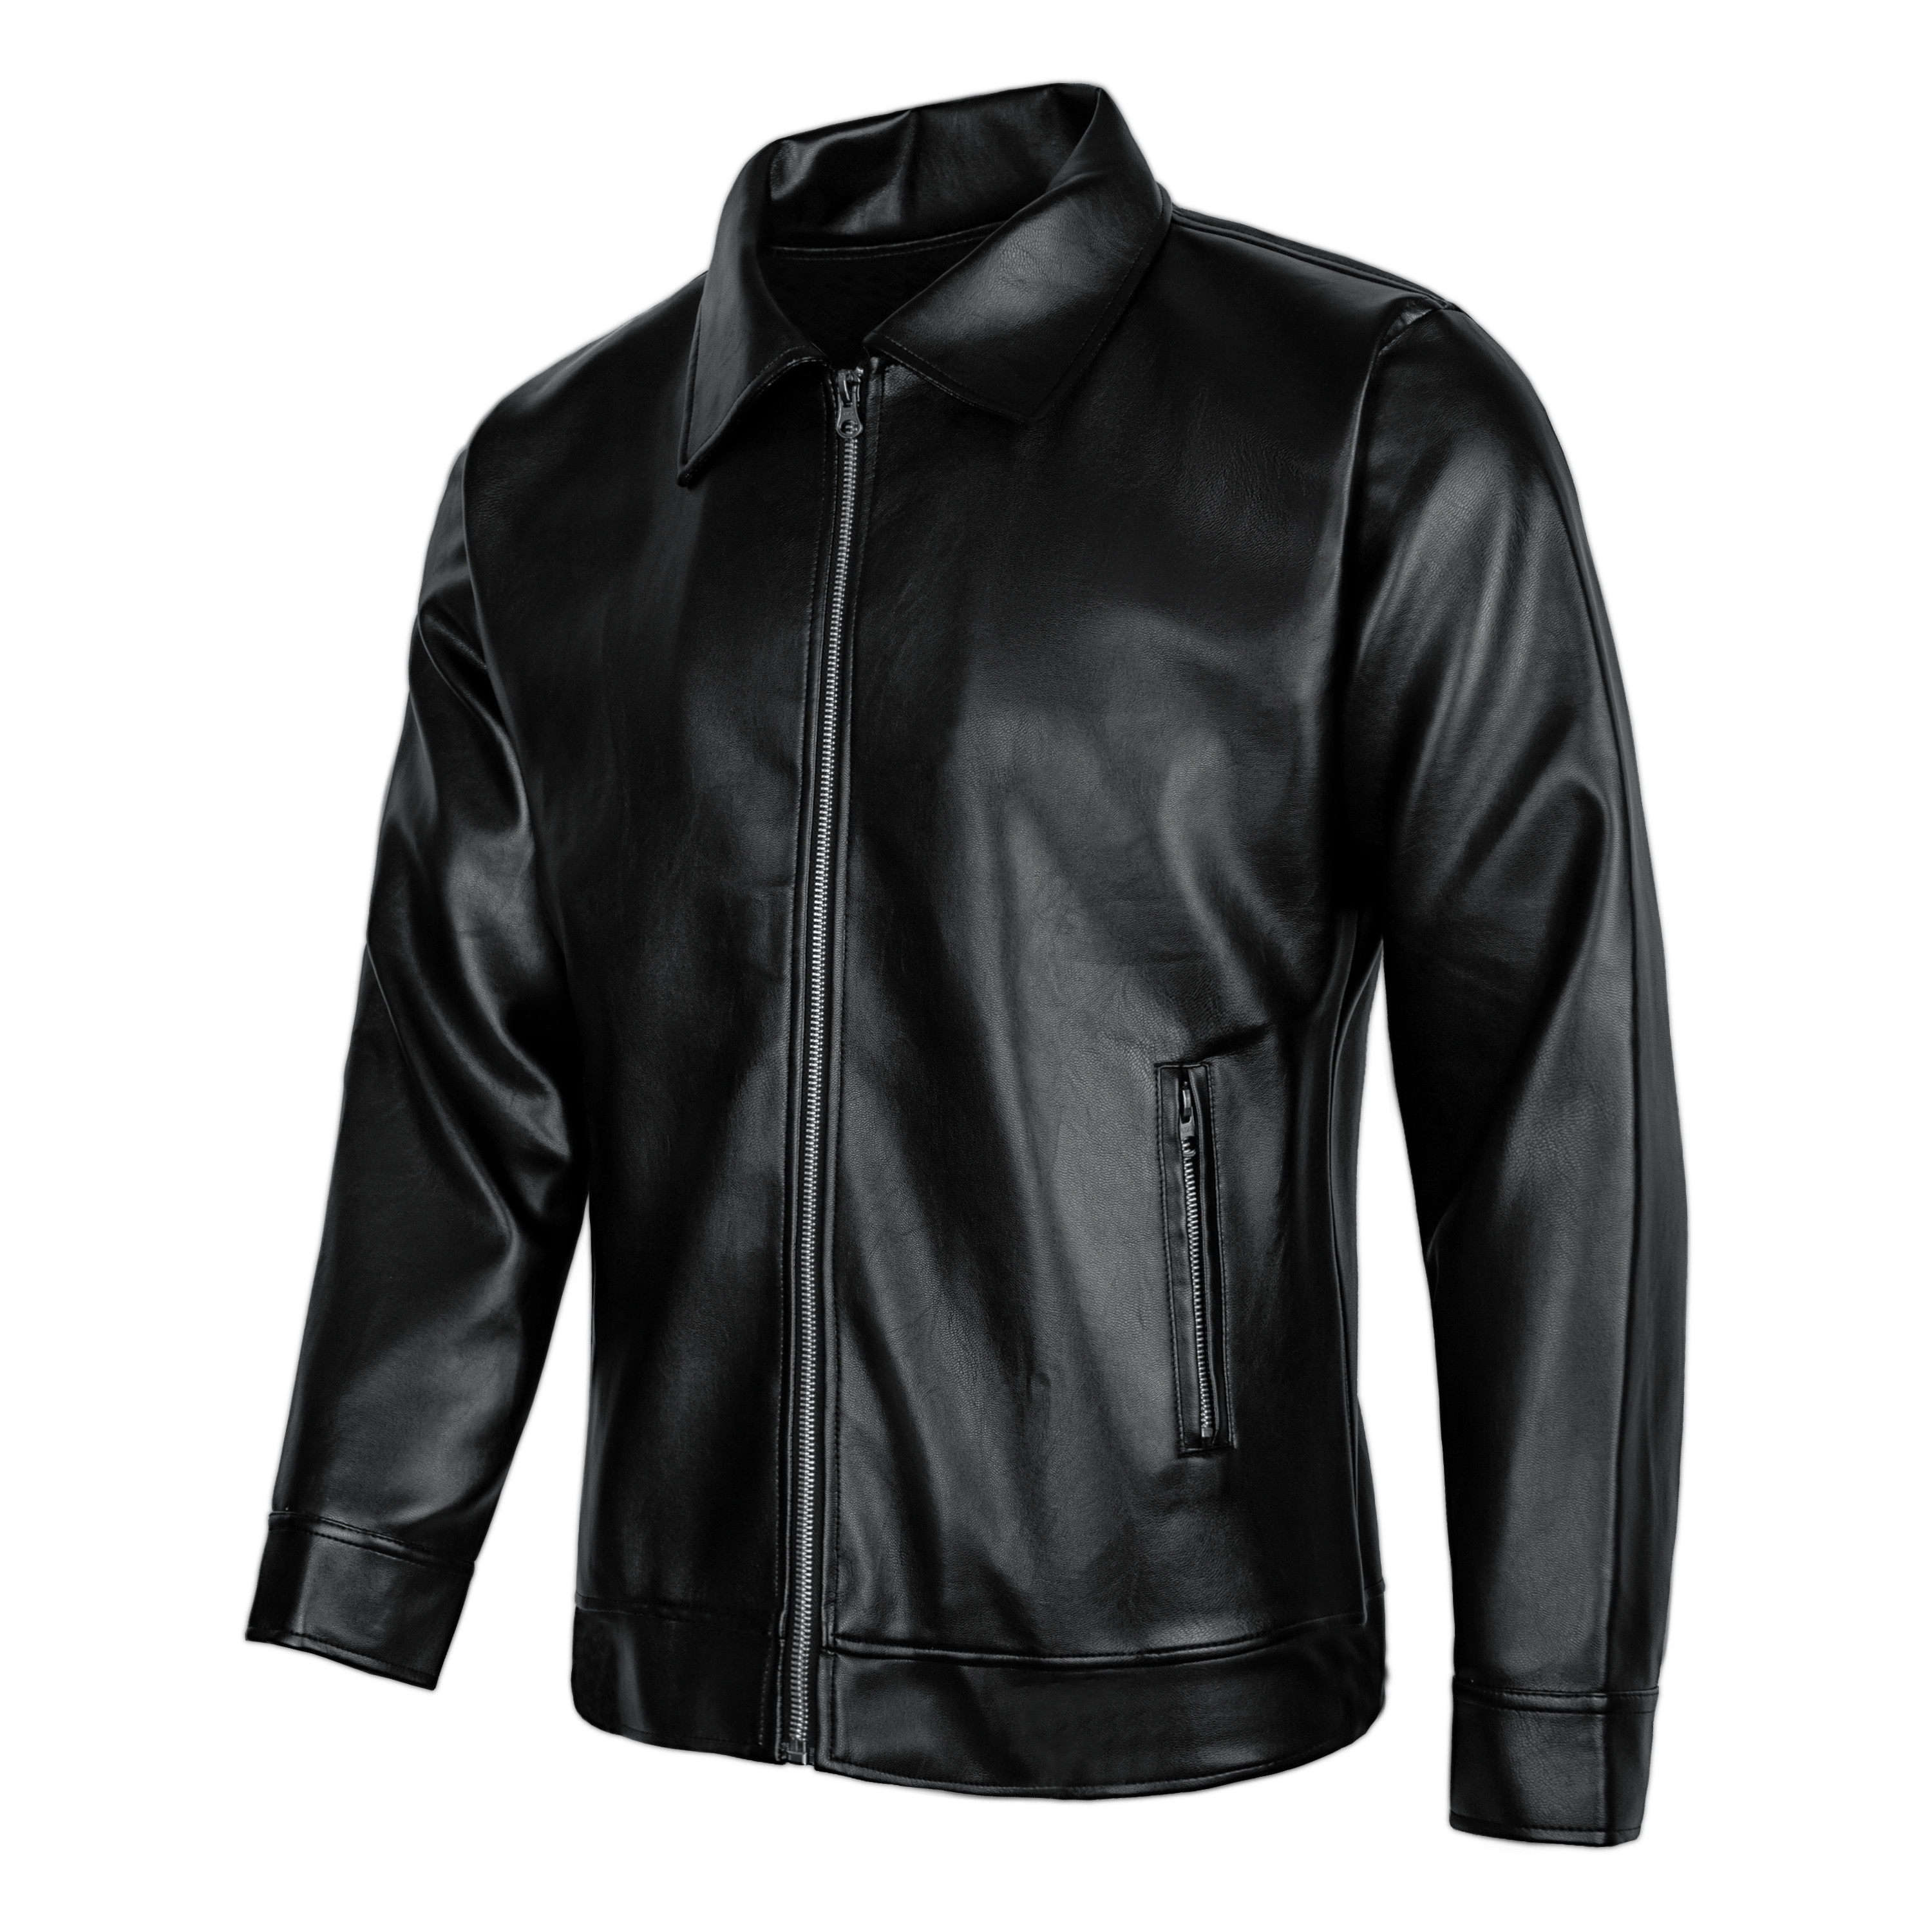 Áo khoác da nam đen lót lông cao cấp LADOS-2070 có túi trong, giữ form ấm áp, không bong tróc